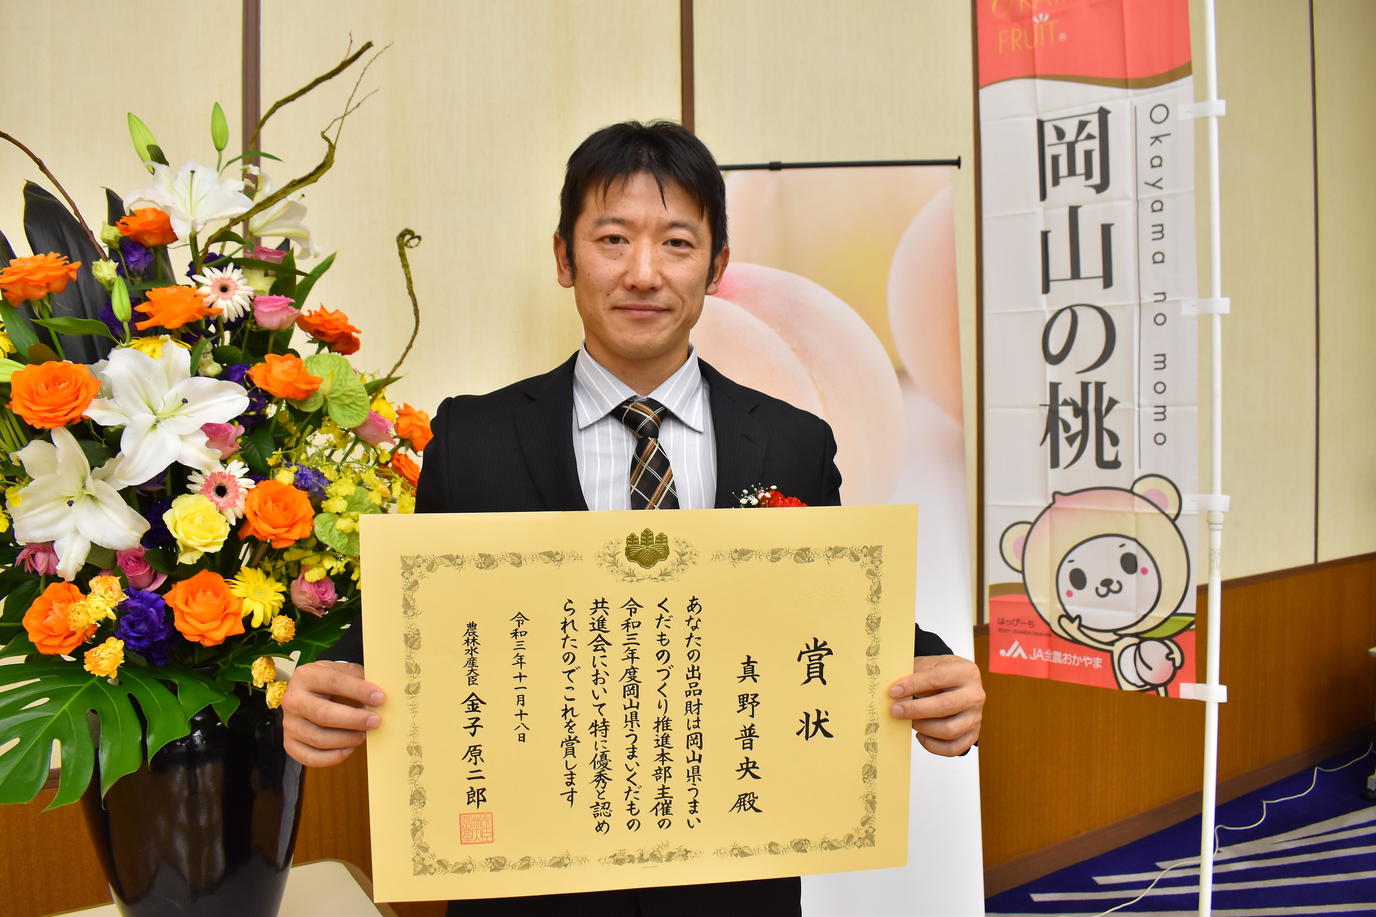 農林水産大臣賞を受賞した岡山市の真野普央さんの内容を表示